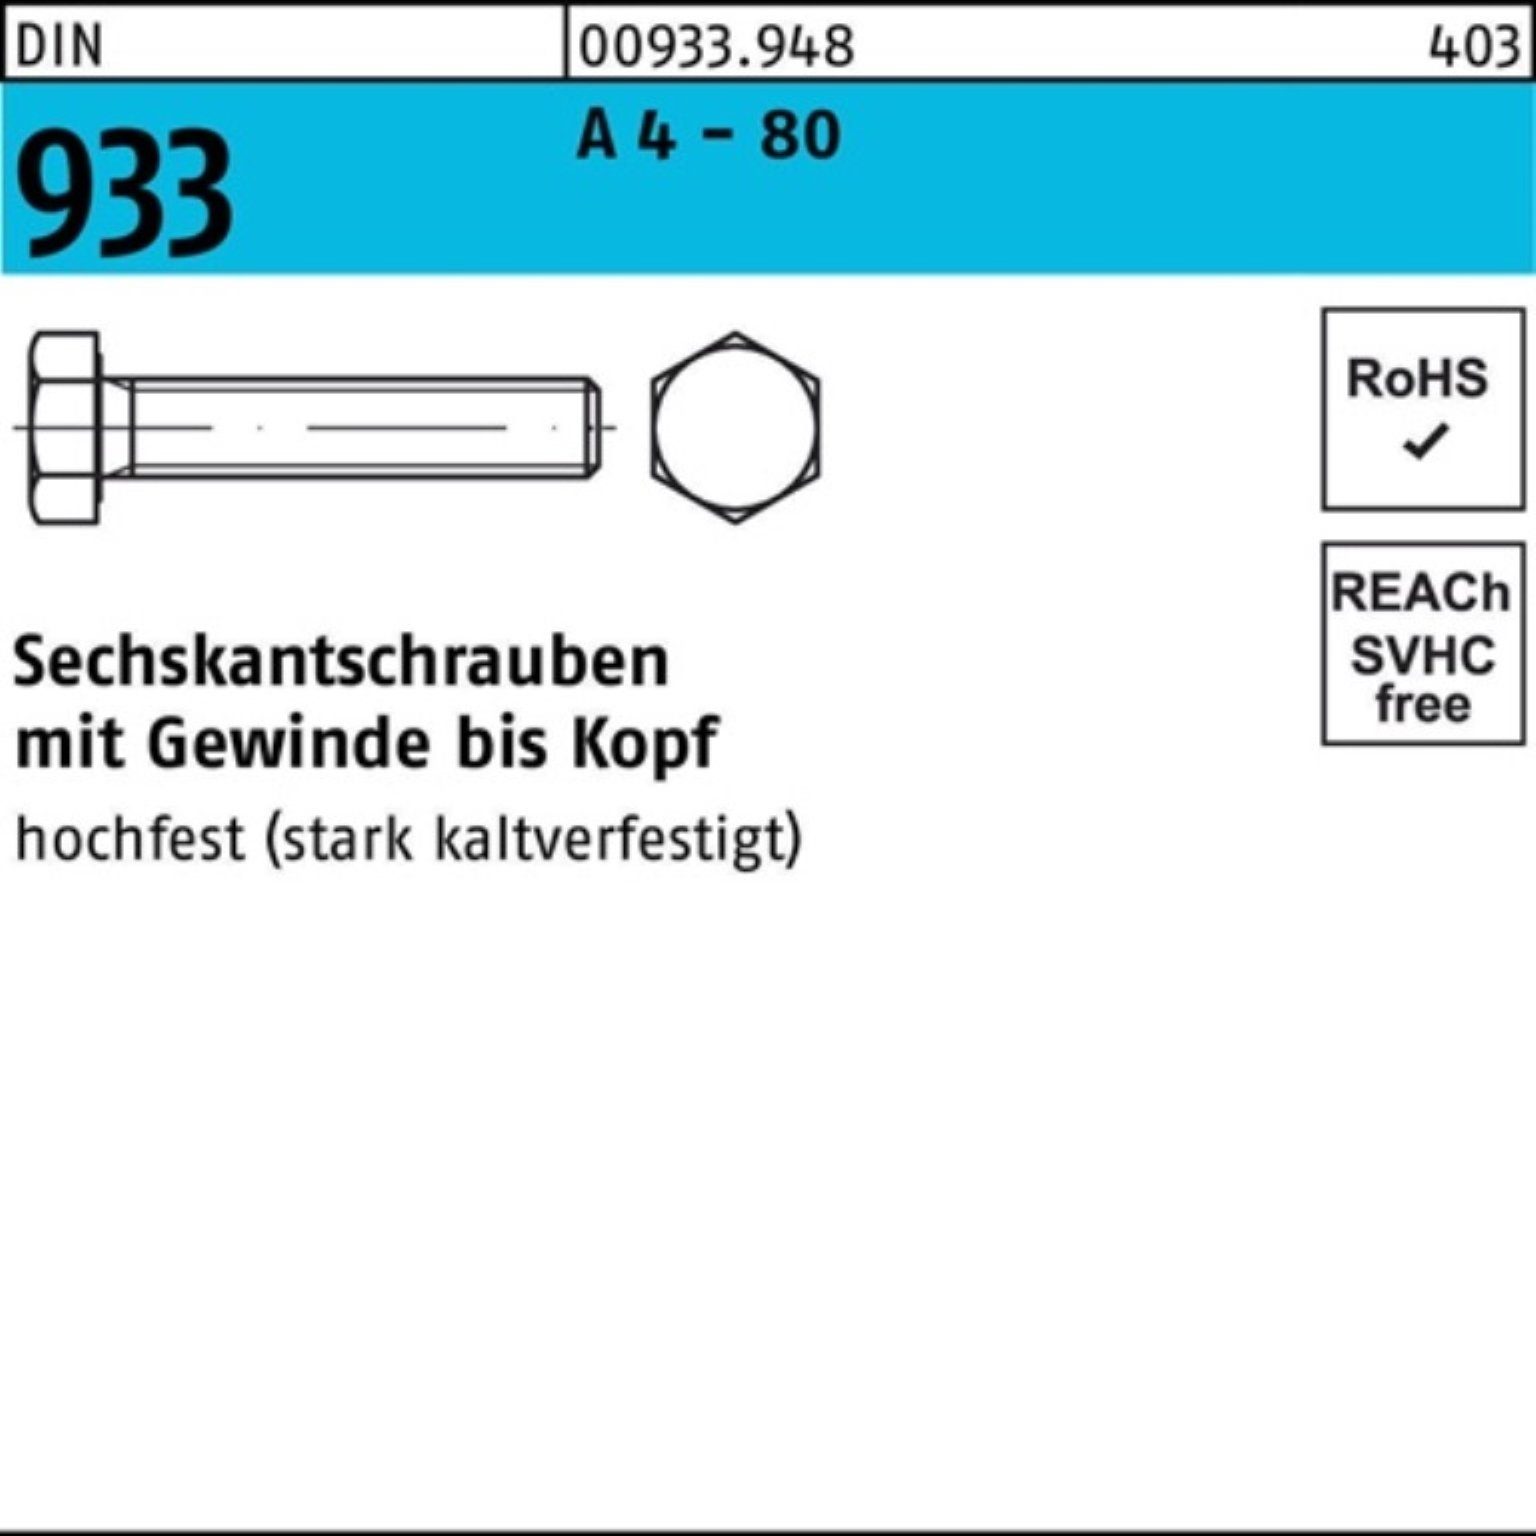 Reyher Sechskantschraube 100er Pack Sechskantschraube DIN 933 VG M6x 20 A 4 - 80 100 Stück DIN